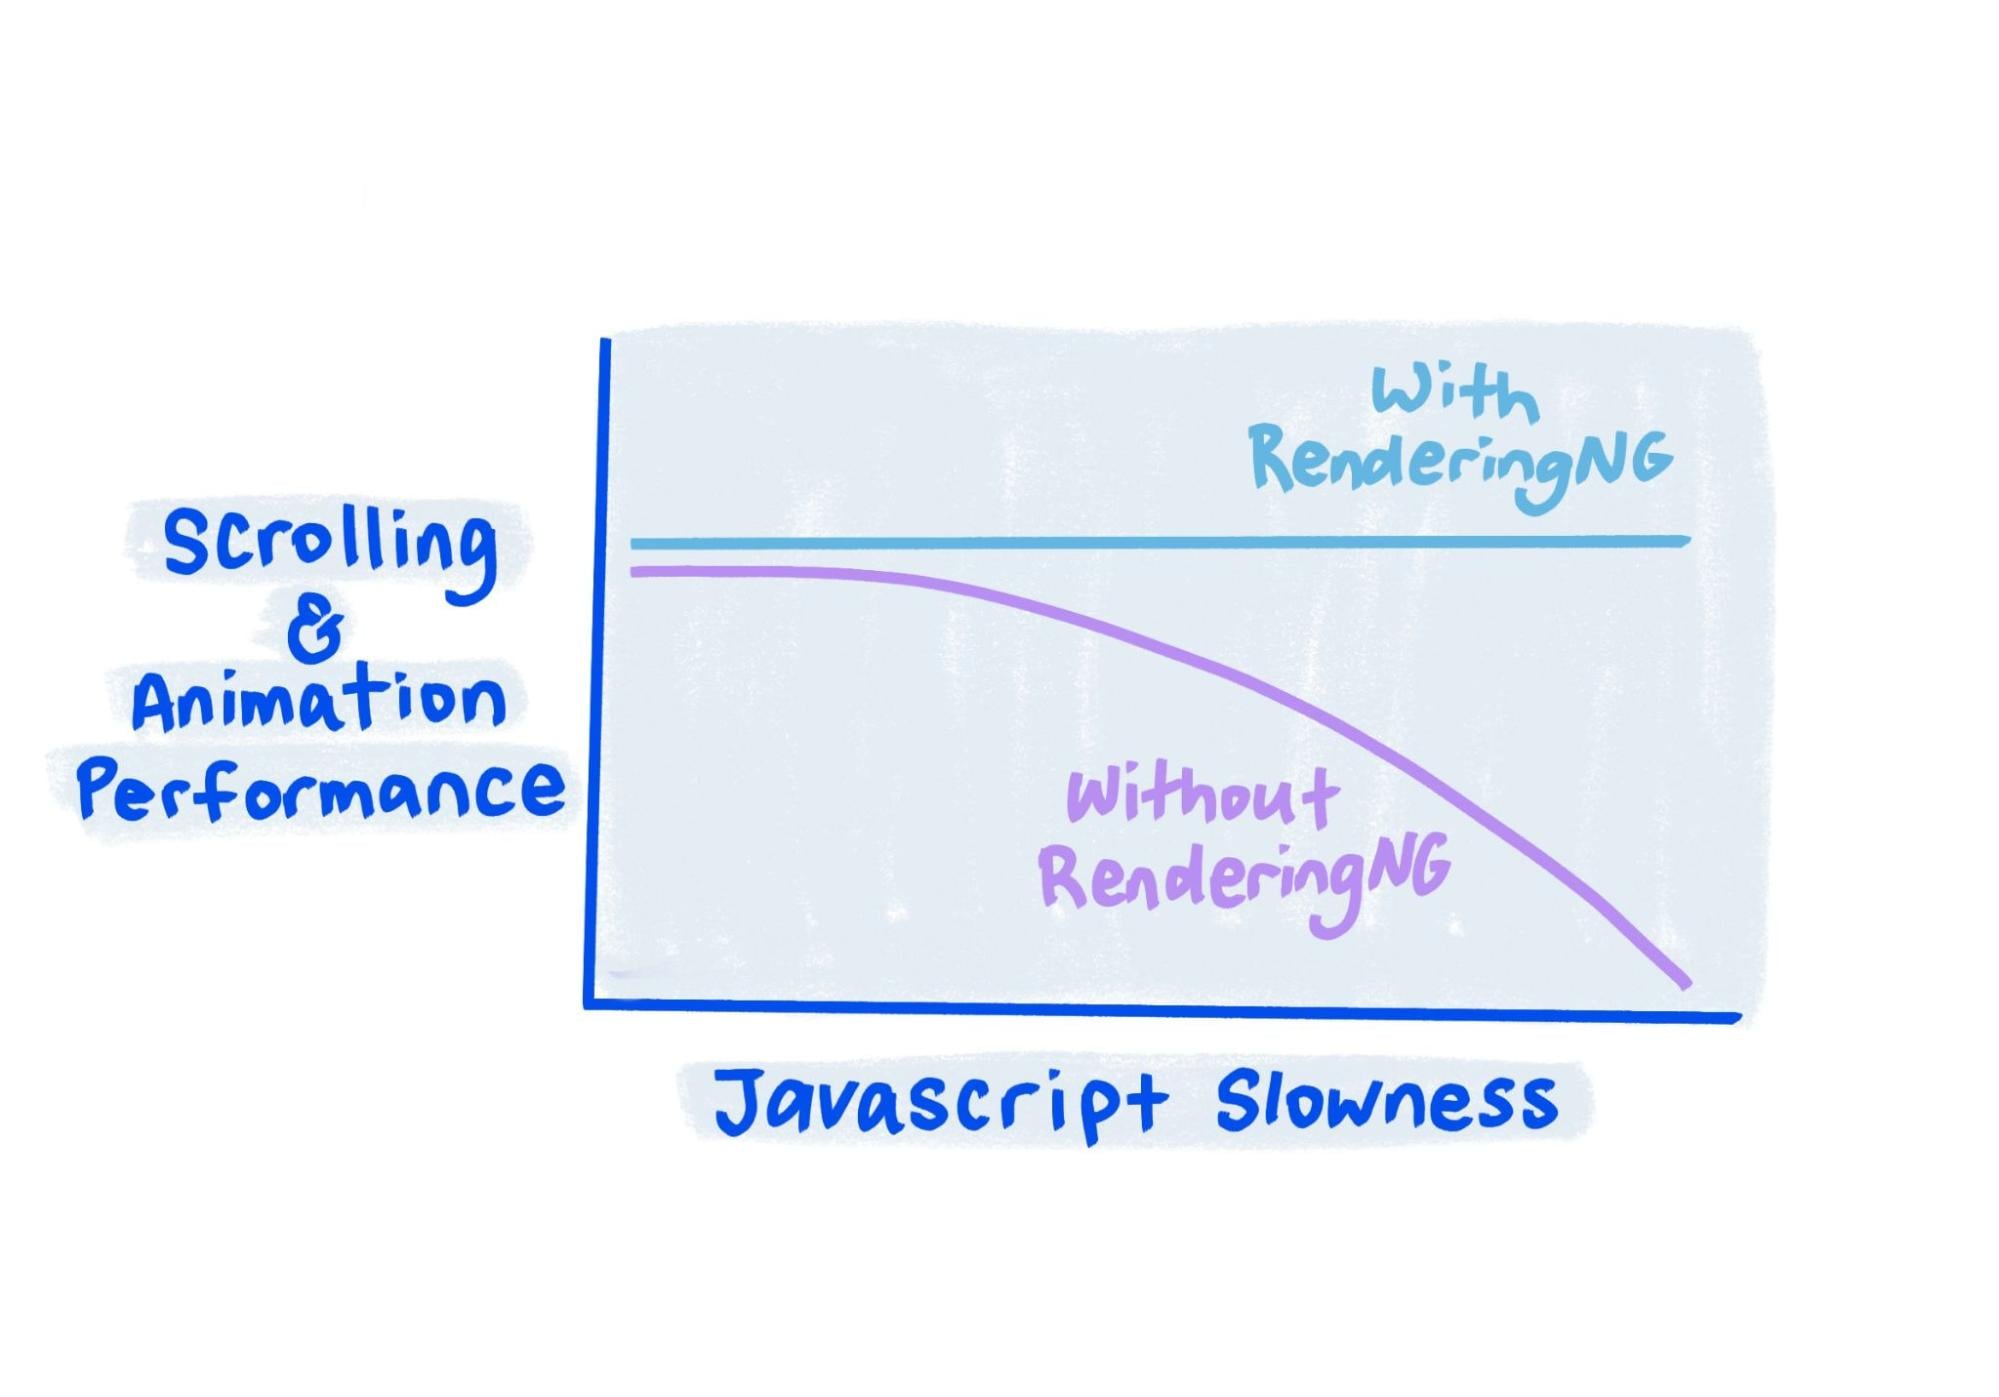 Sketch muestra que, con RenderingNG, el rendimiento se mantiene sólido incluso cuando JavaScript es muy lento.